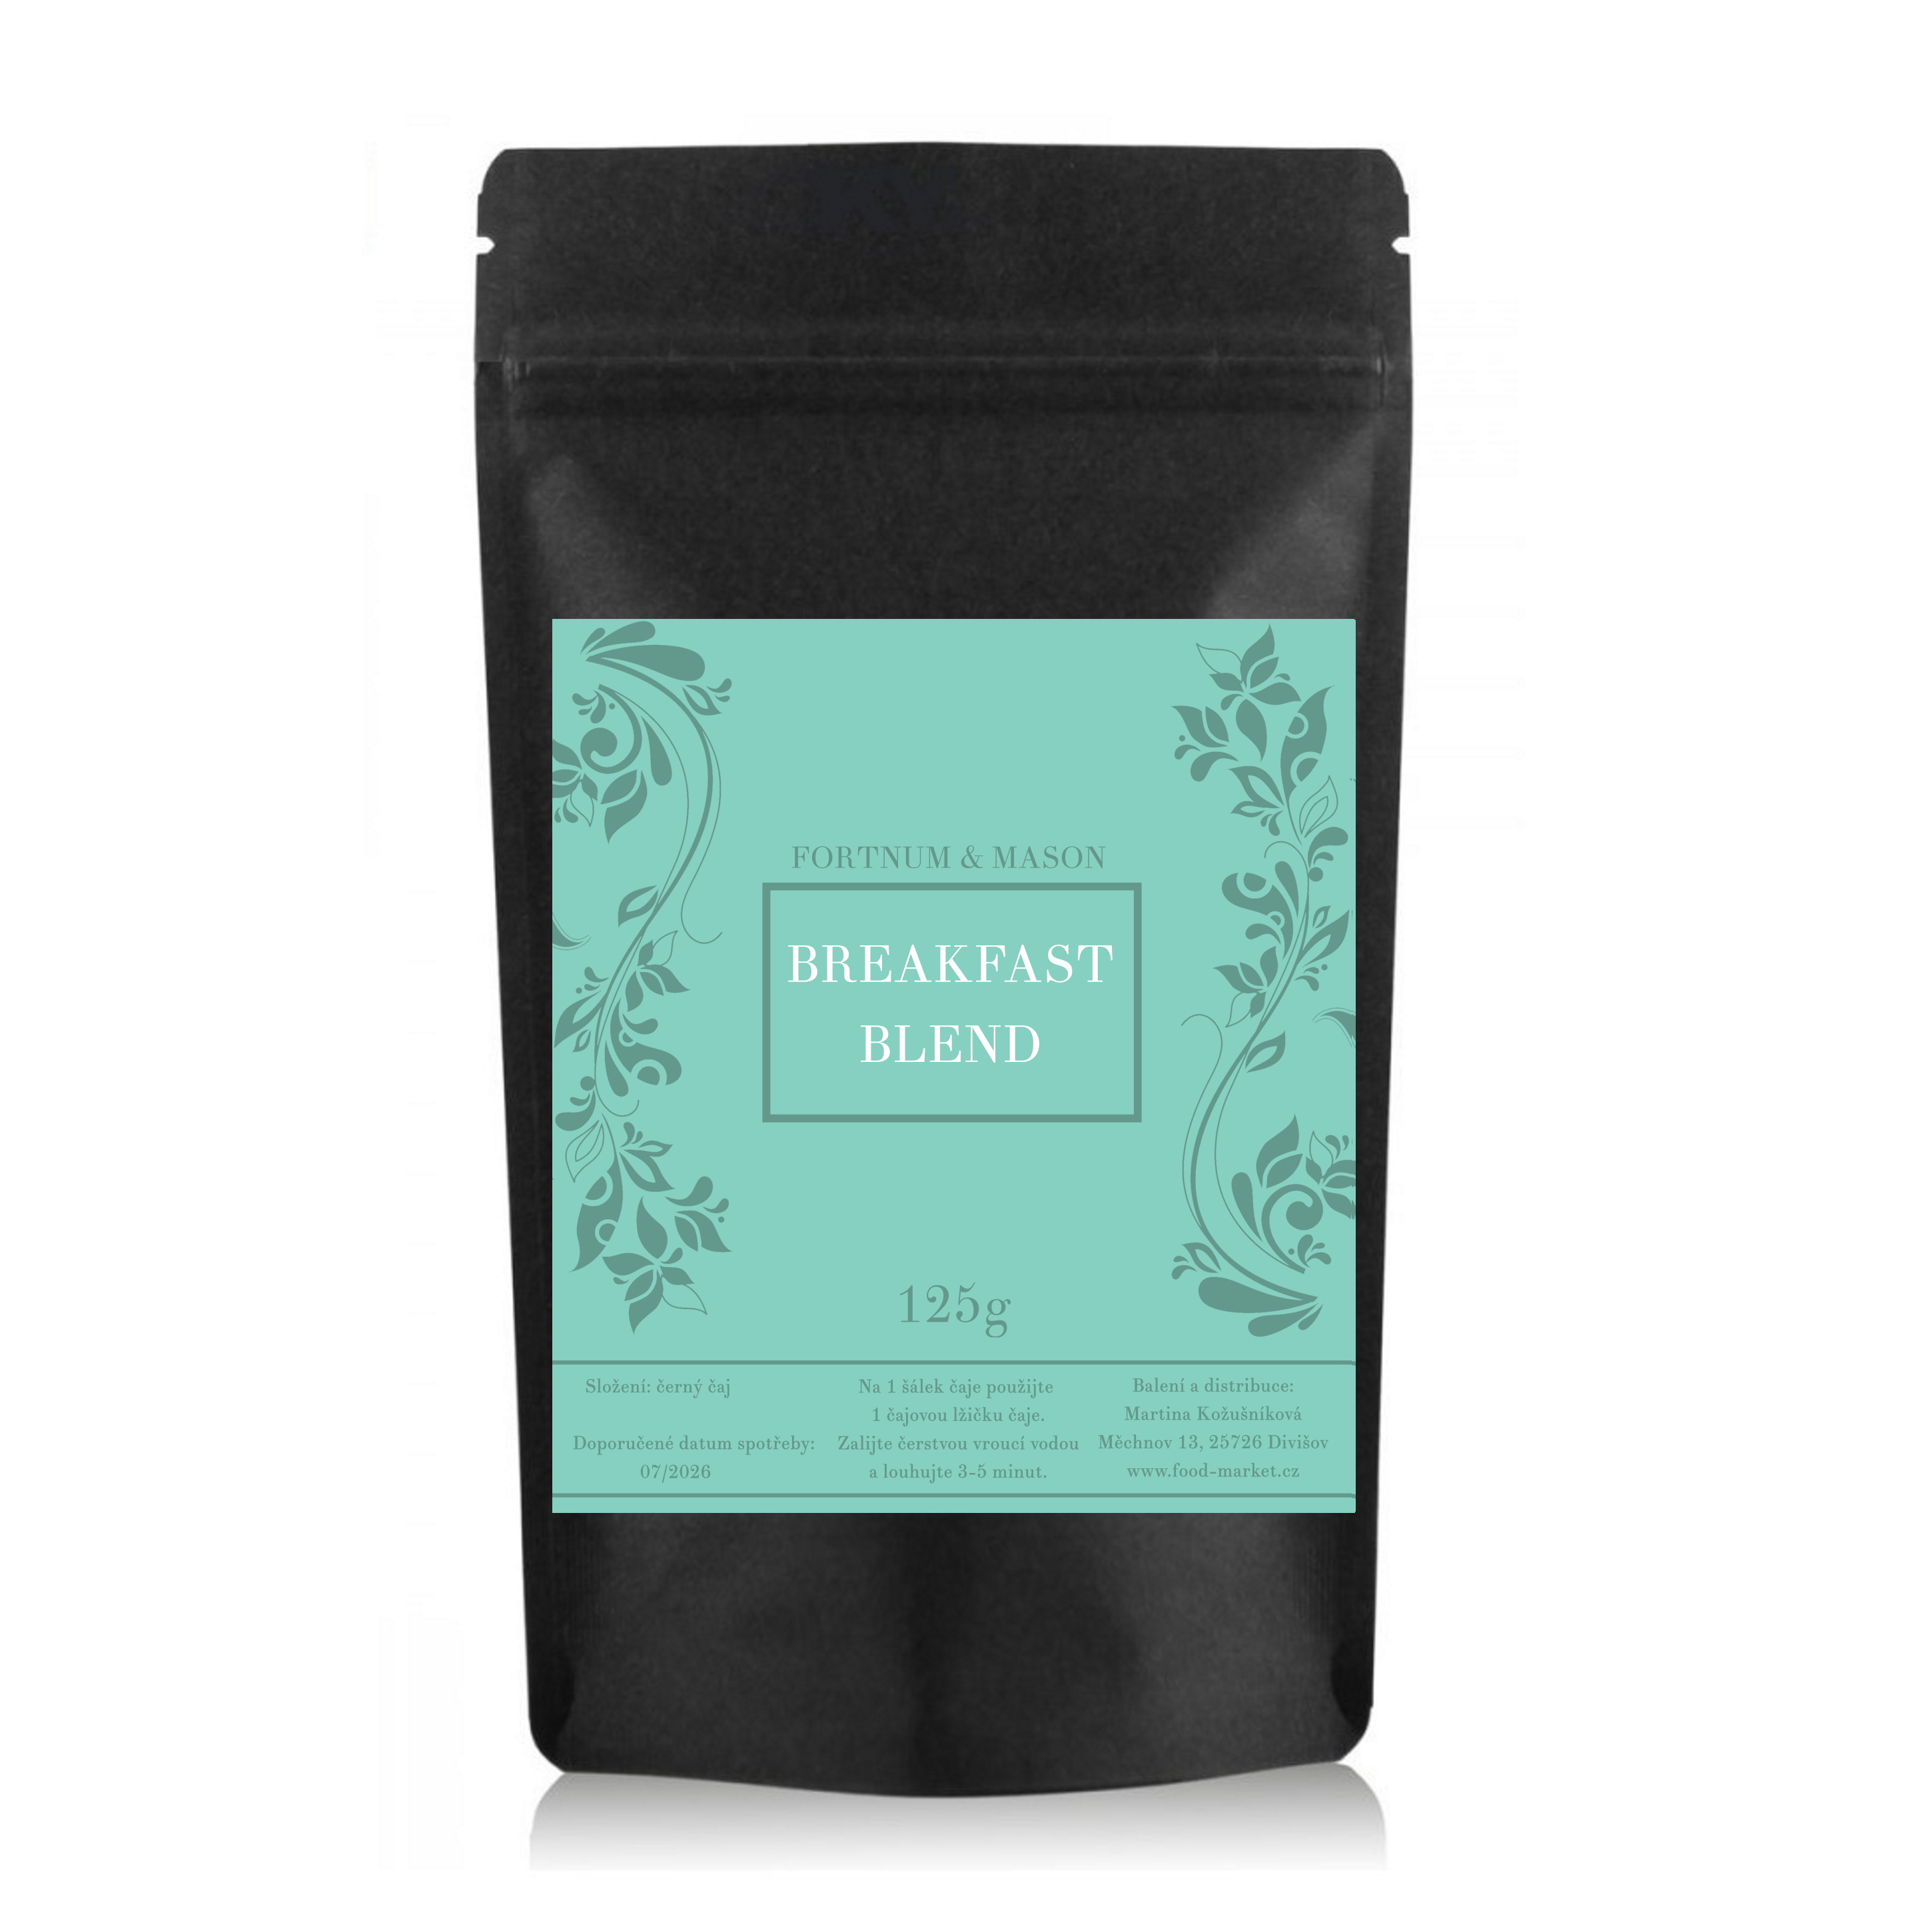 černý čaj BREAKFAST BLEND sypaný 125g (sáček) od Fortnum & Mason